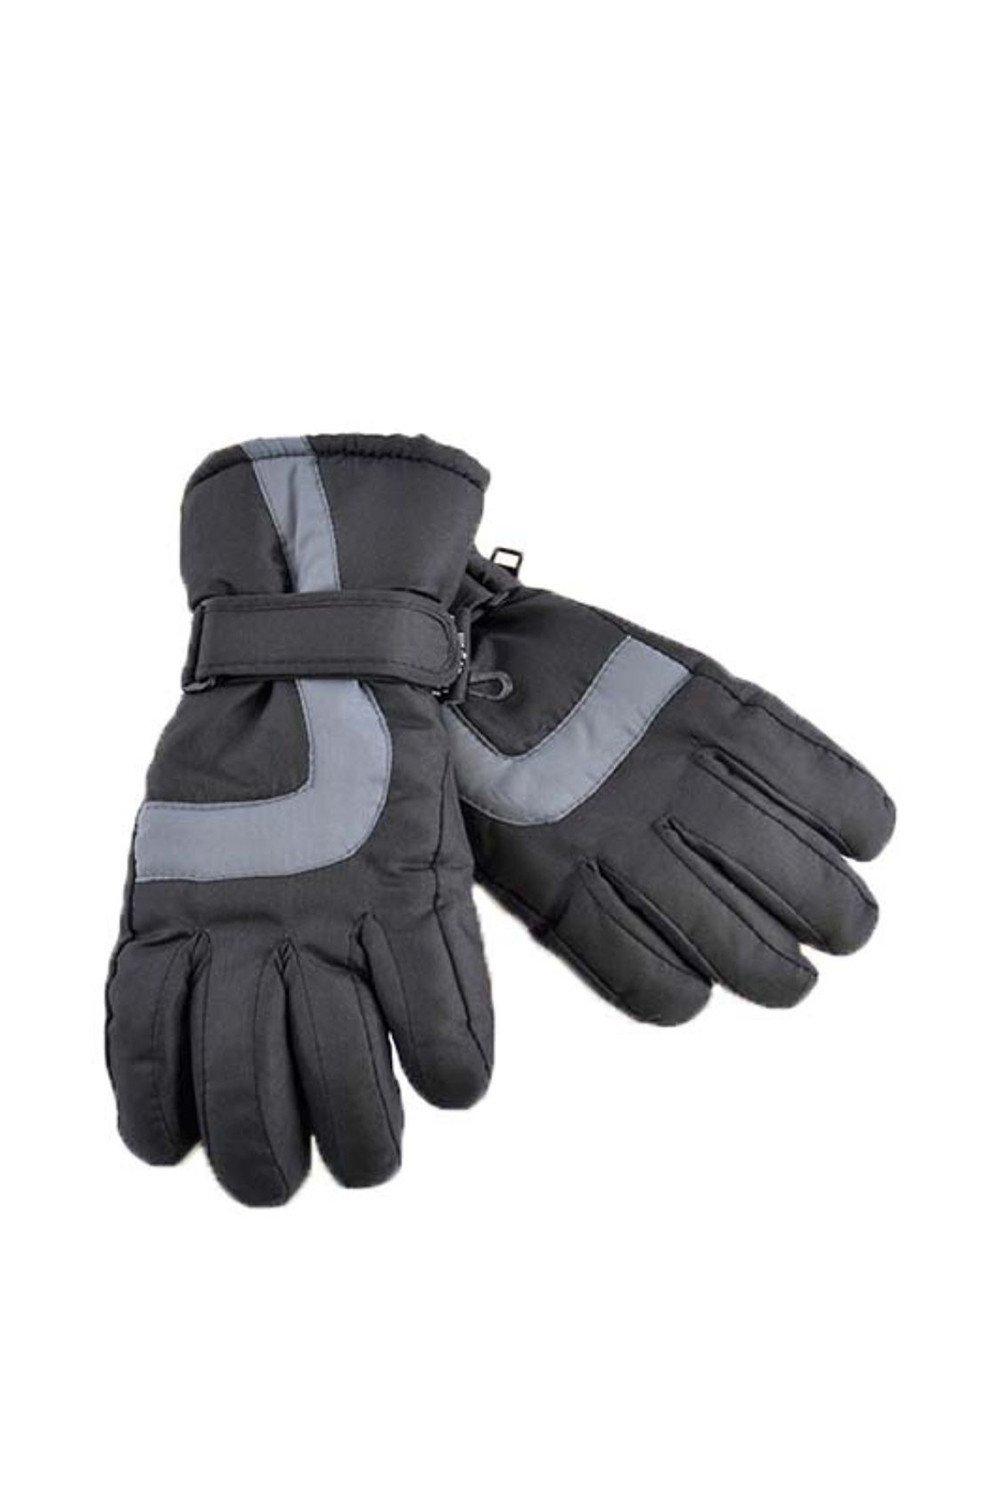 Thermal Waterproof Ski Gloves